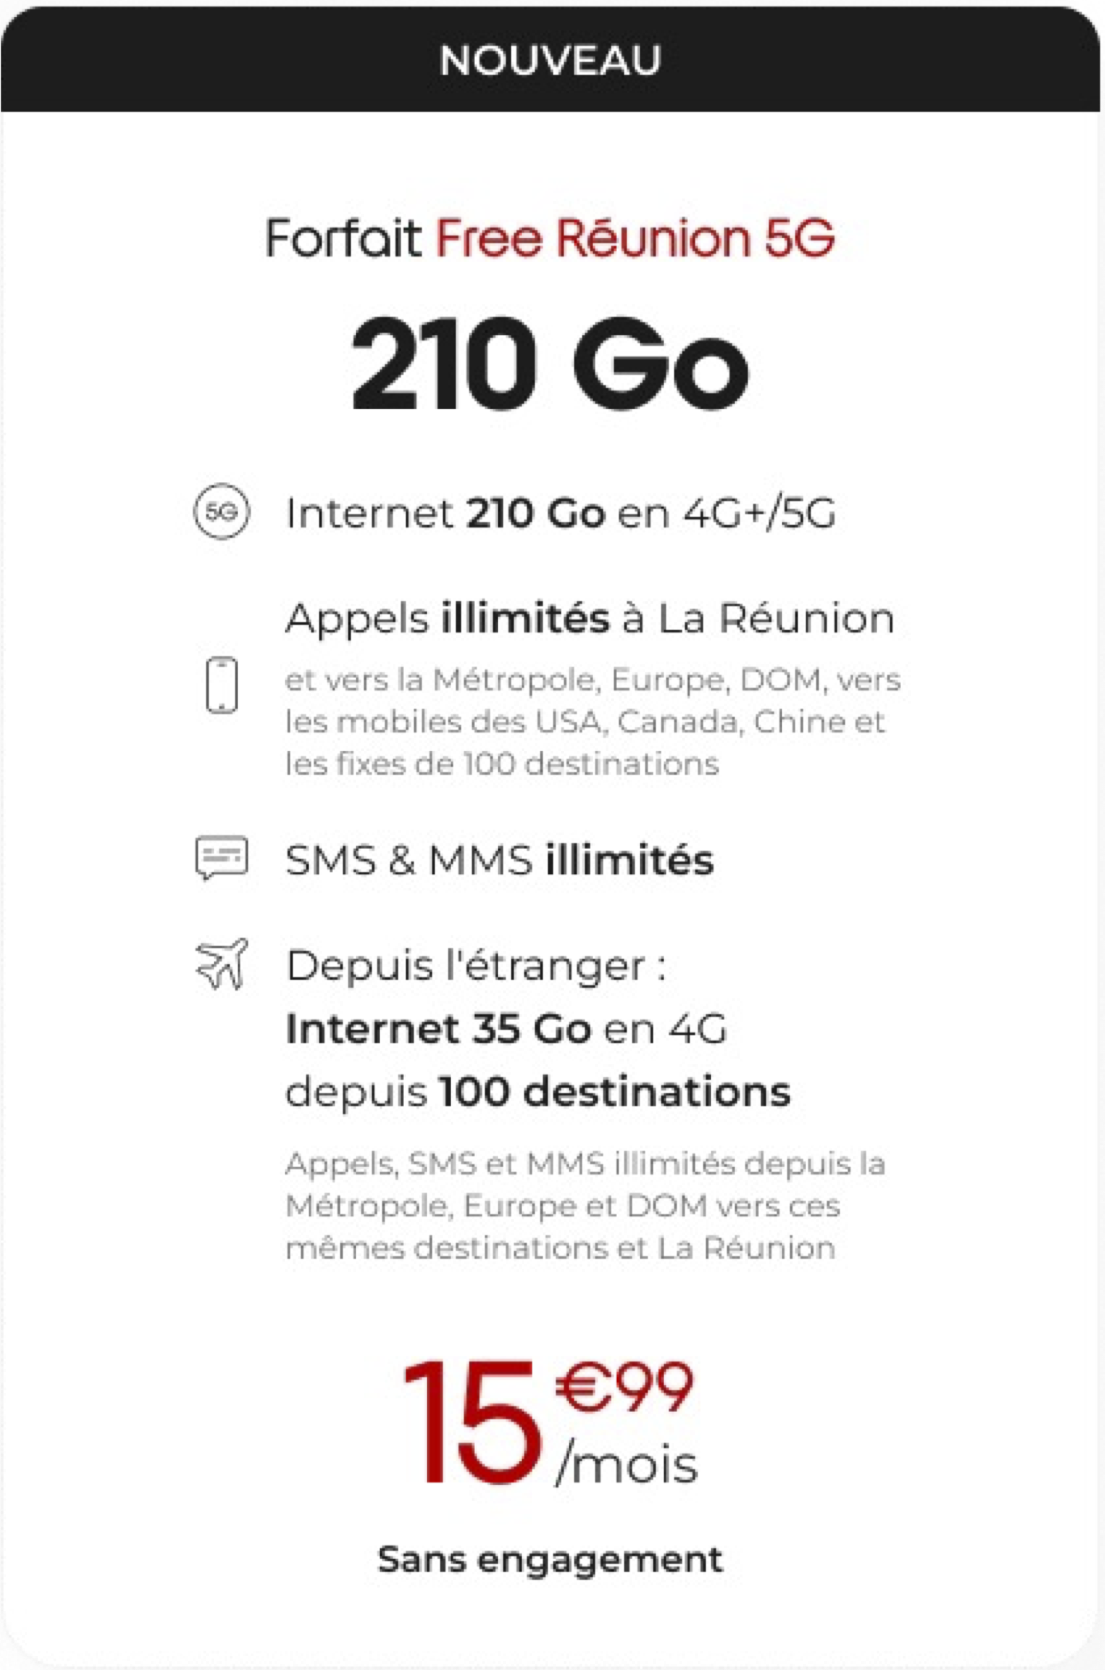 La Réunion : Free lance son forfait 5G à un prix ultra compétitif avec 210 Go d’Internet pour 15,99€/mois, sans engagement !